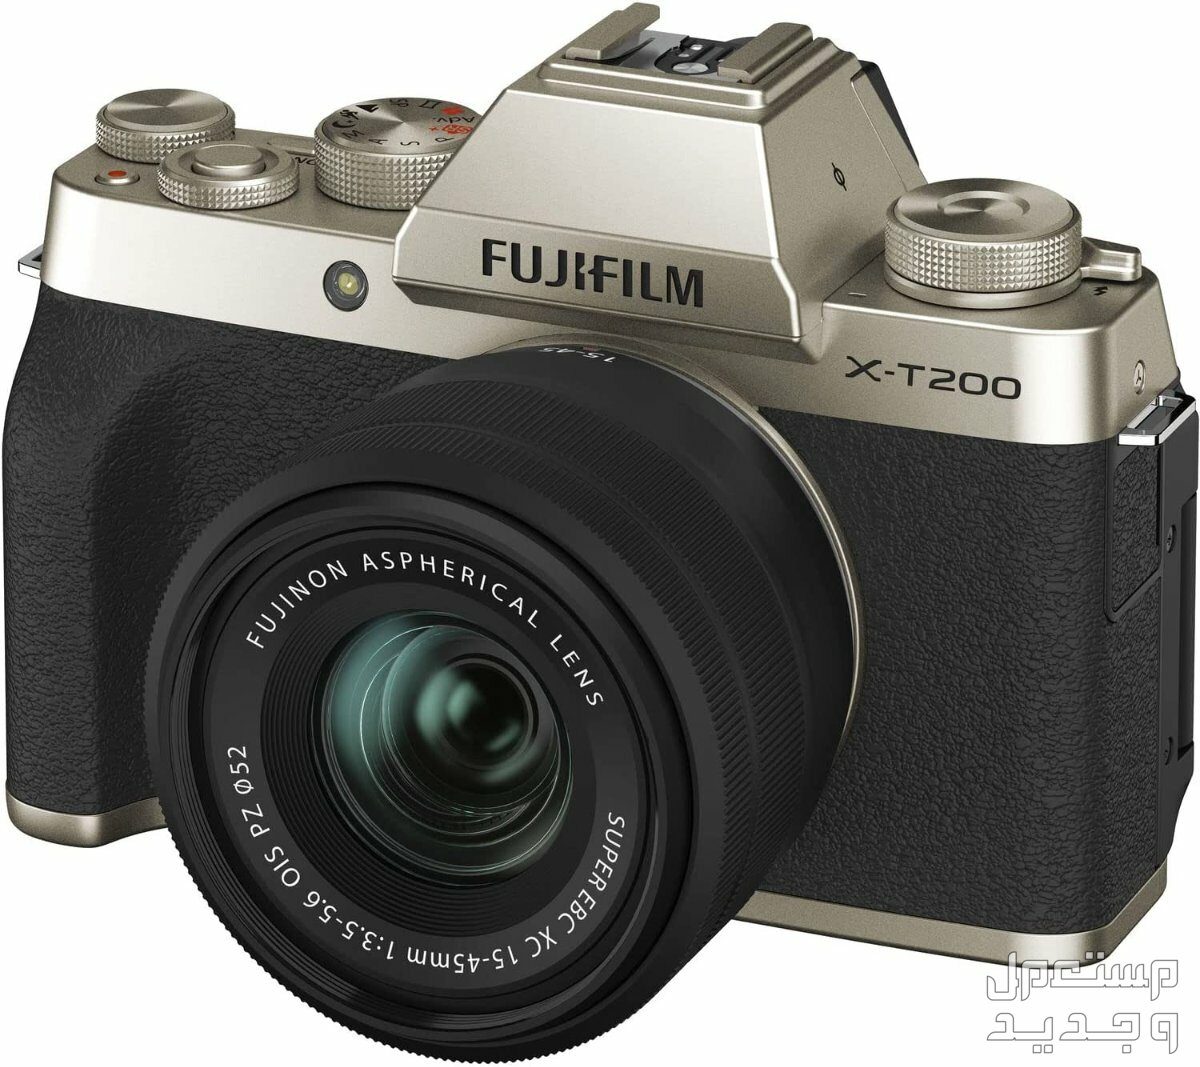 10 كاميرات تصوير ماركات عالمية بأسعار رخيصة في الجزائر كاميرا Fujifilm X-T200